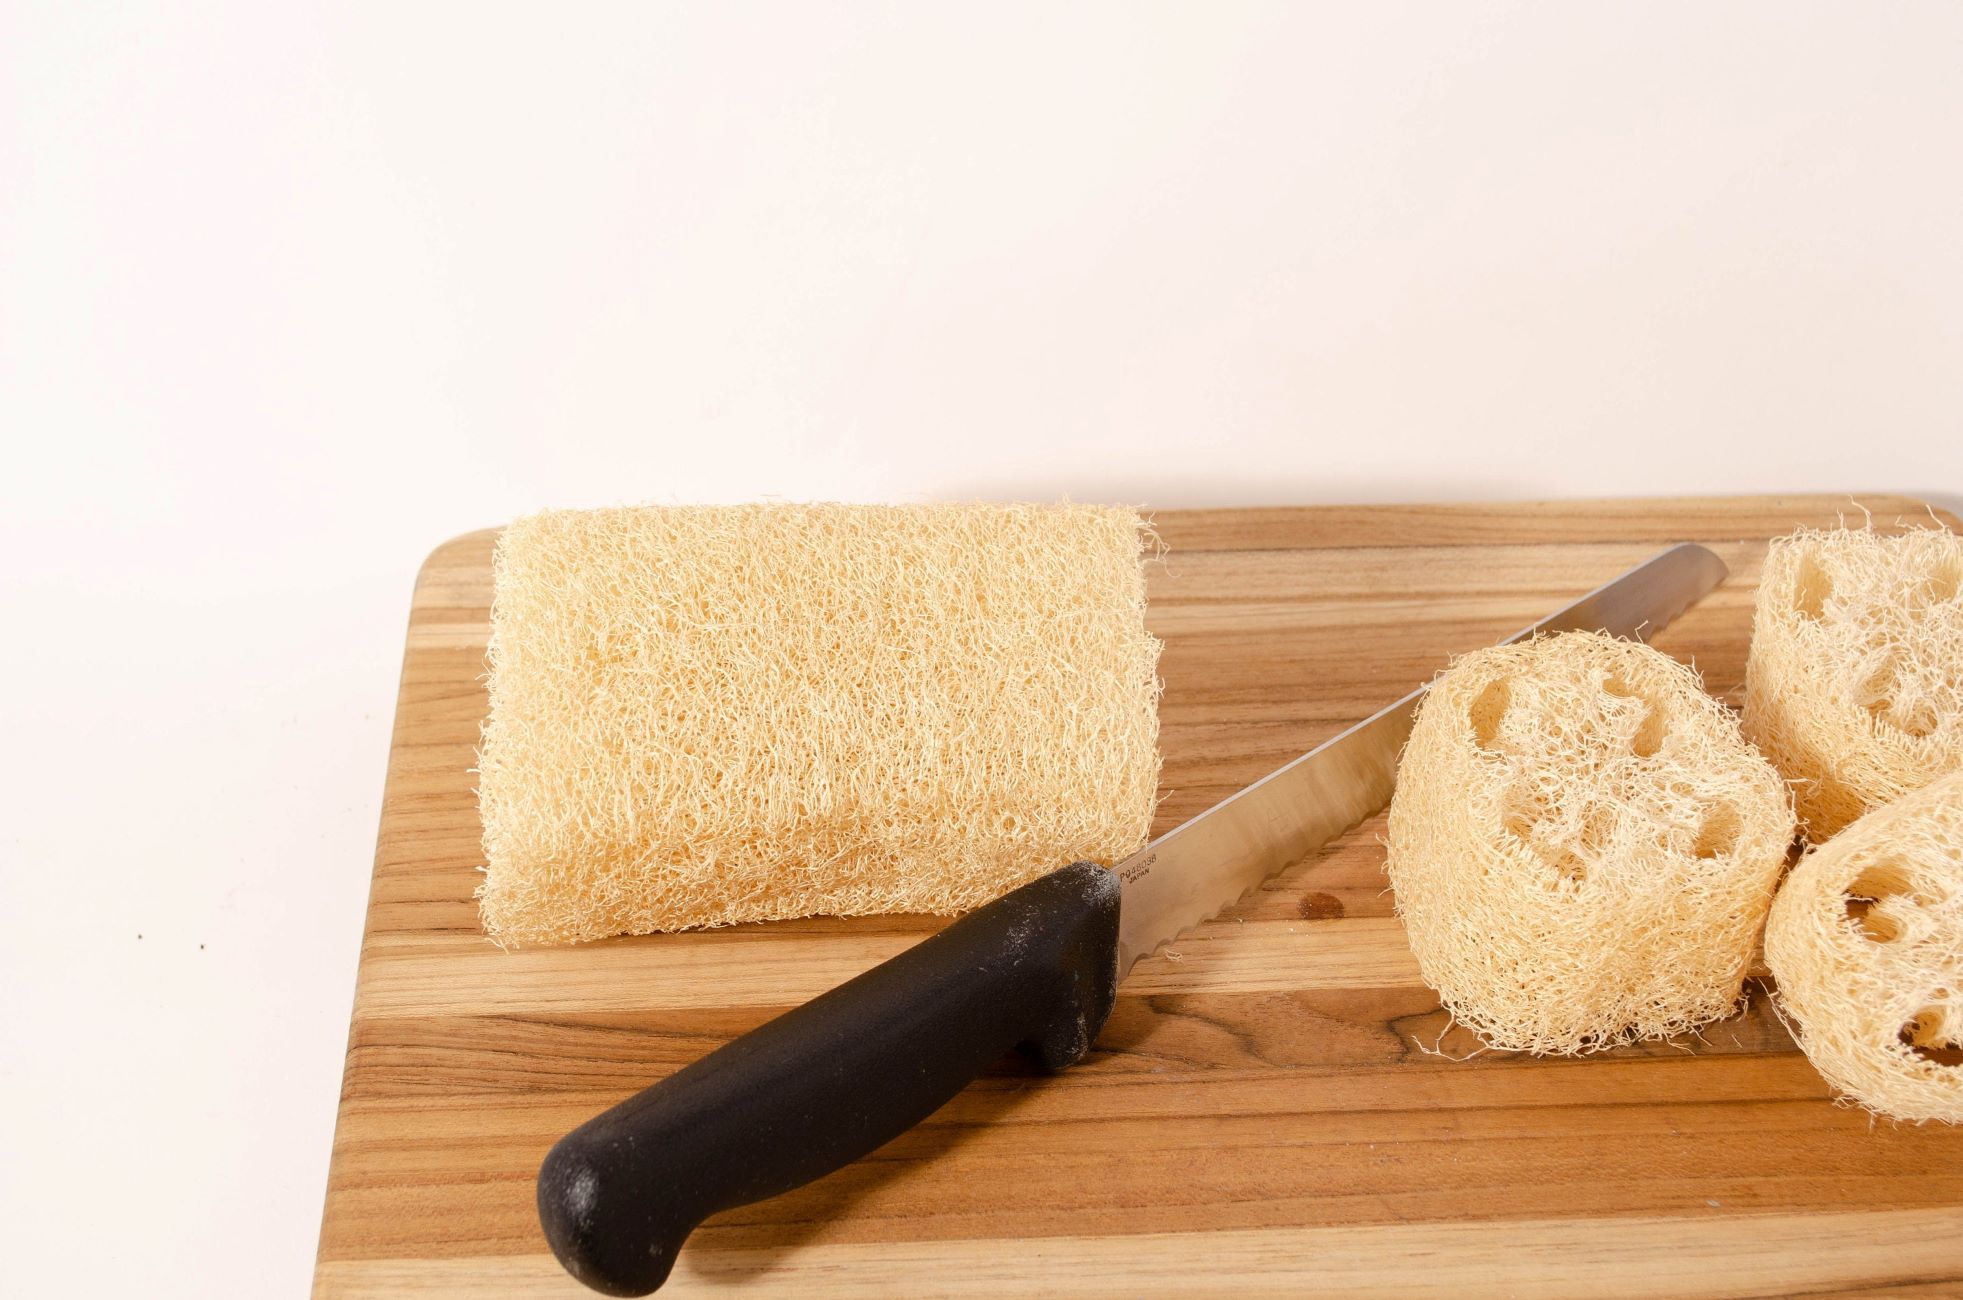 How To Cut Loofah Sponge